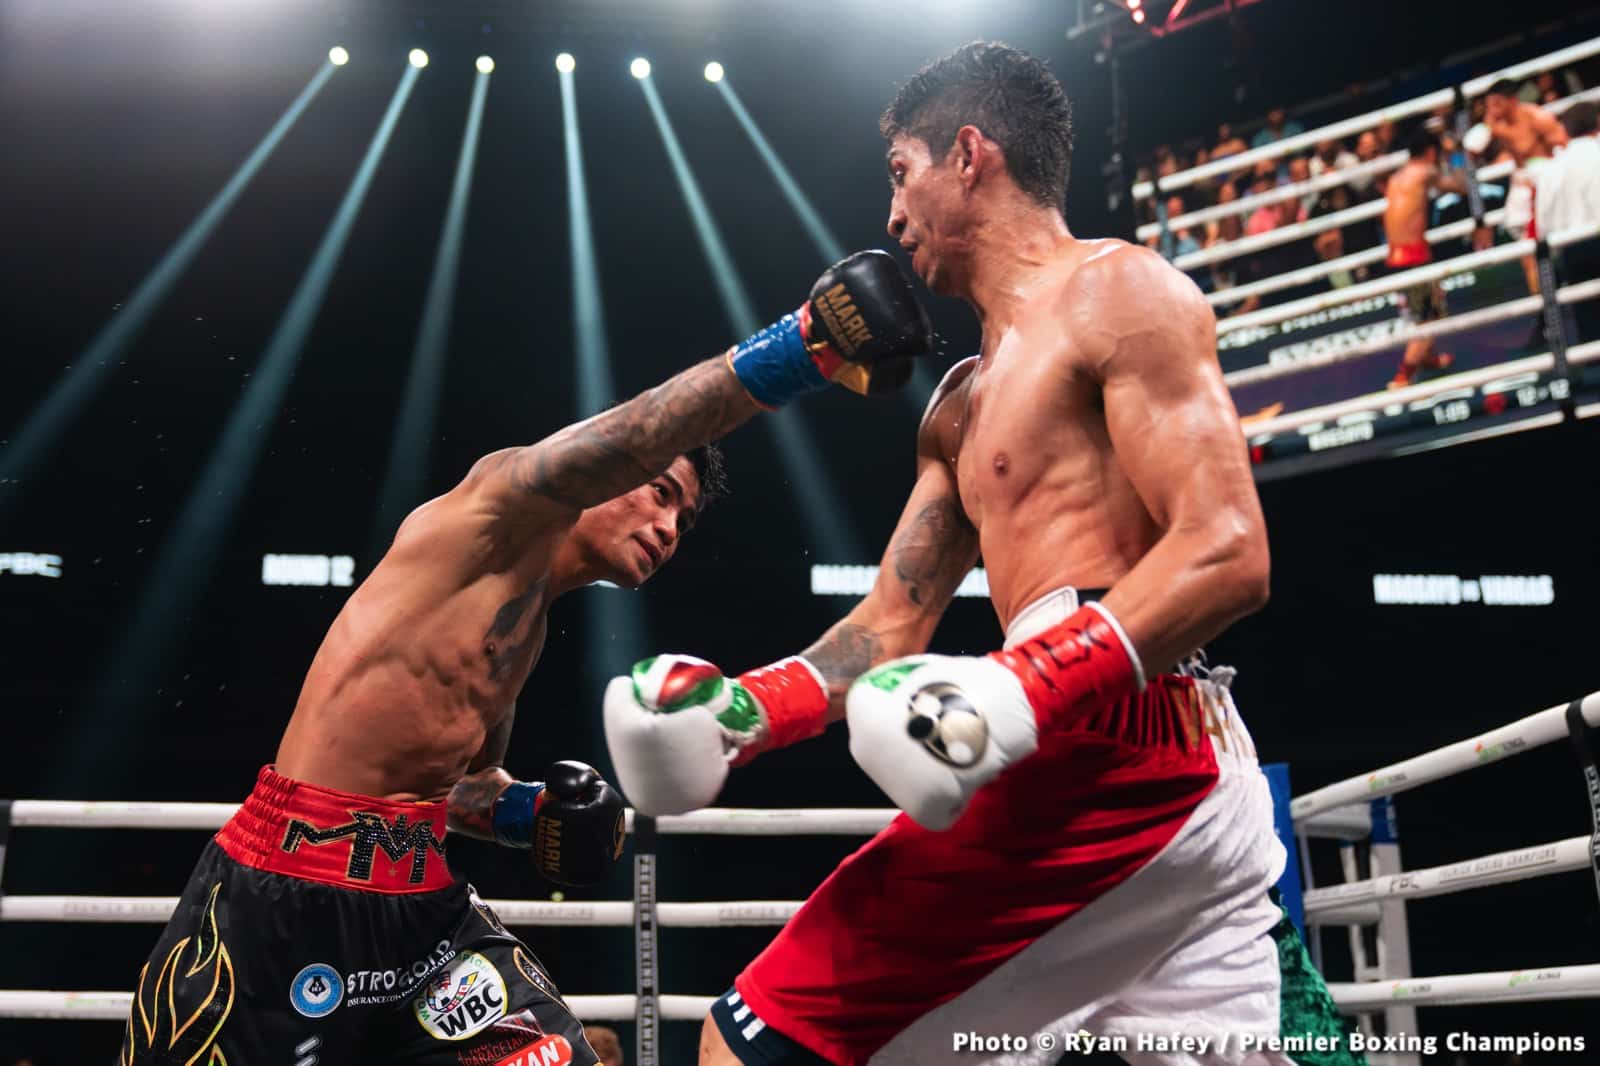 Rey Vargas boxing image / photo